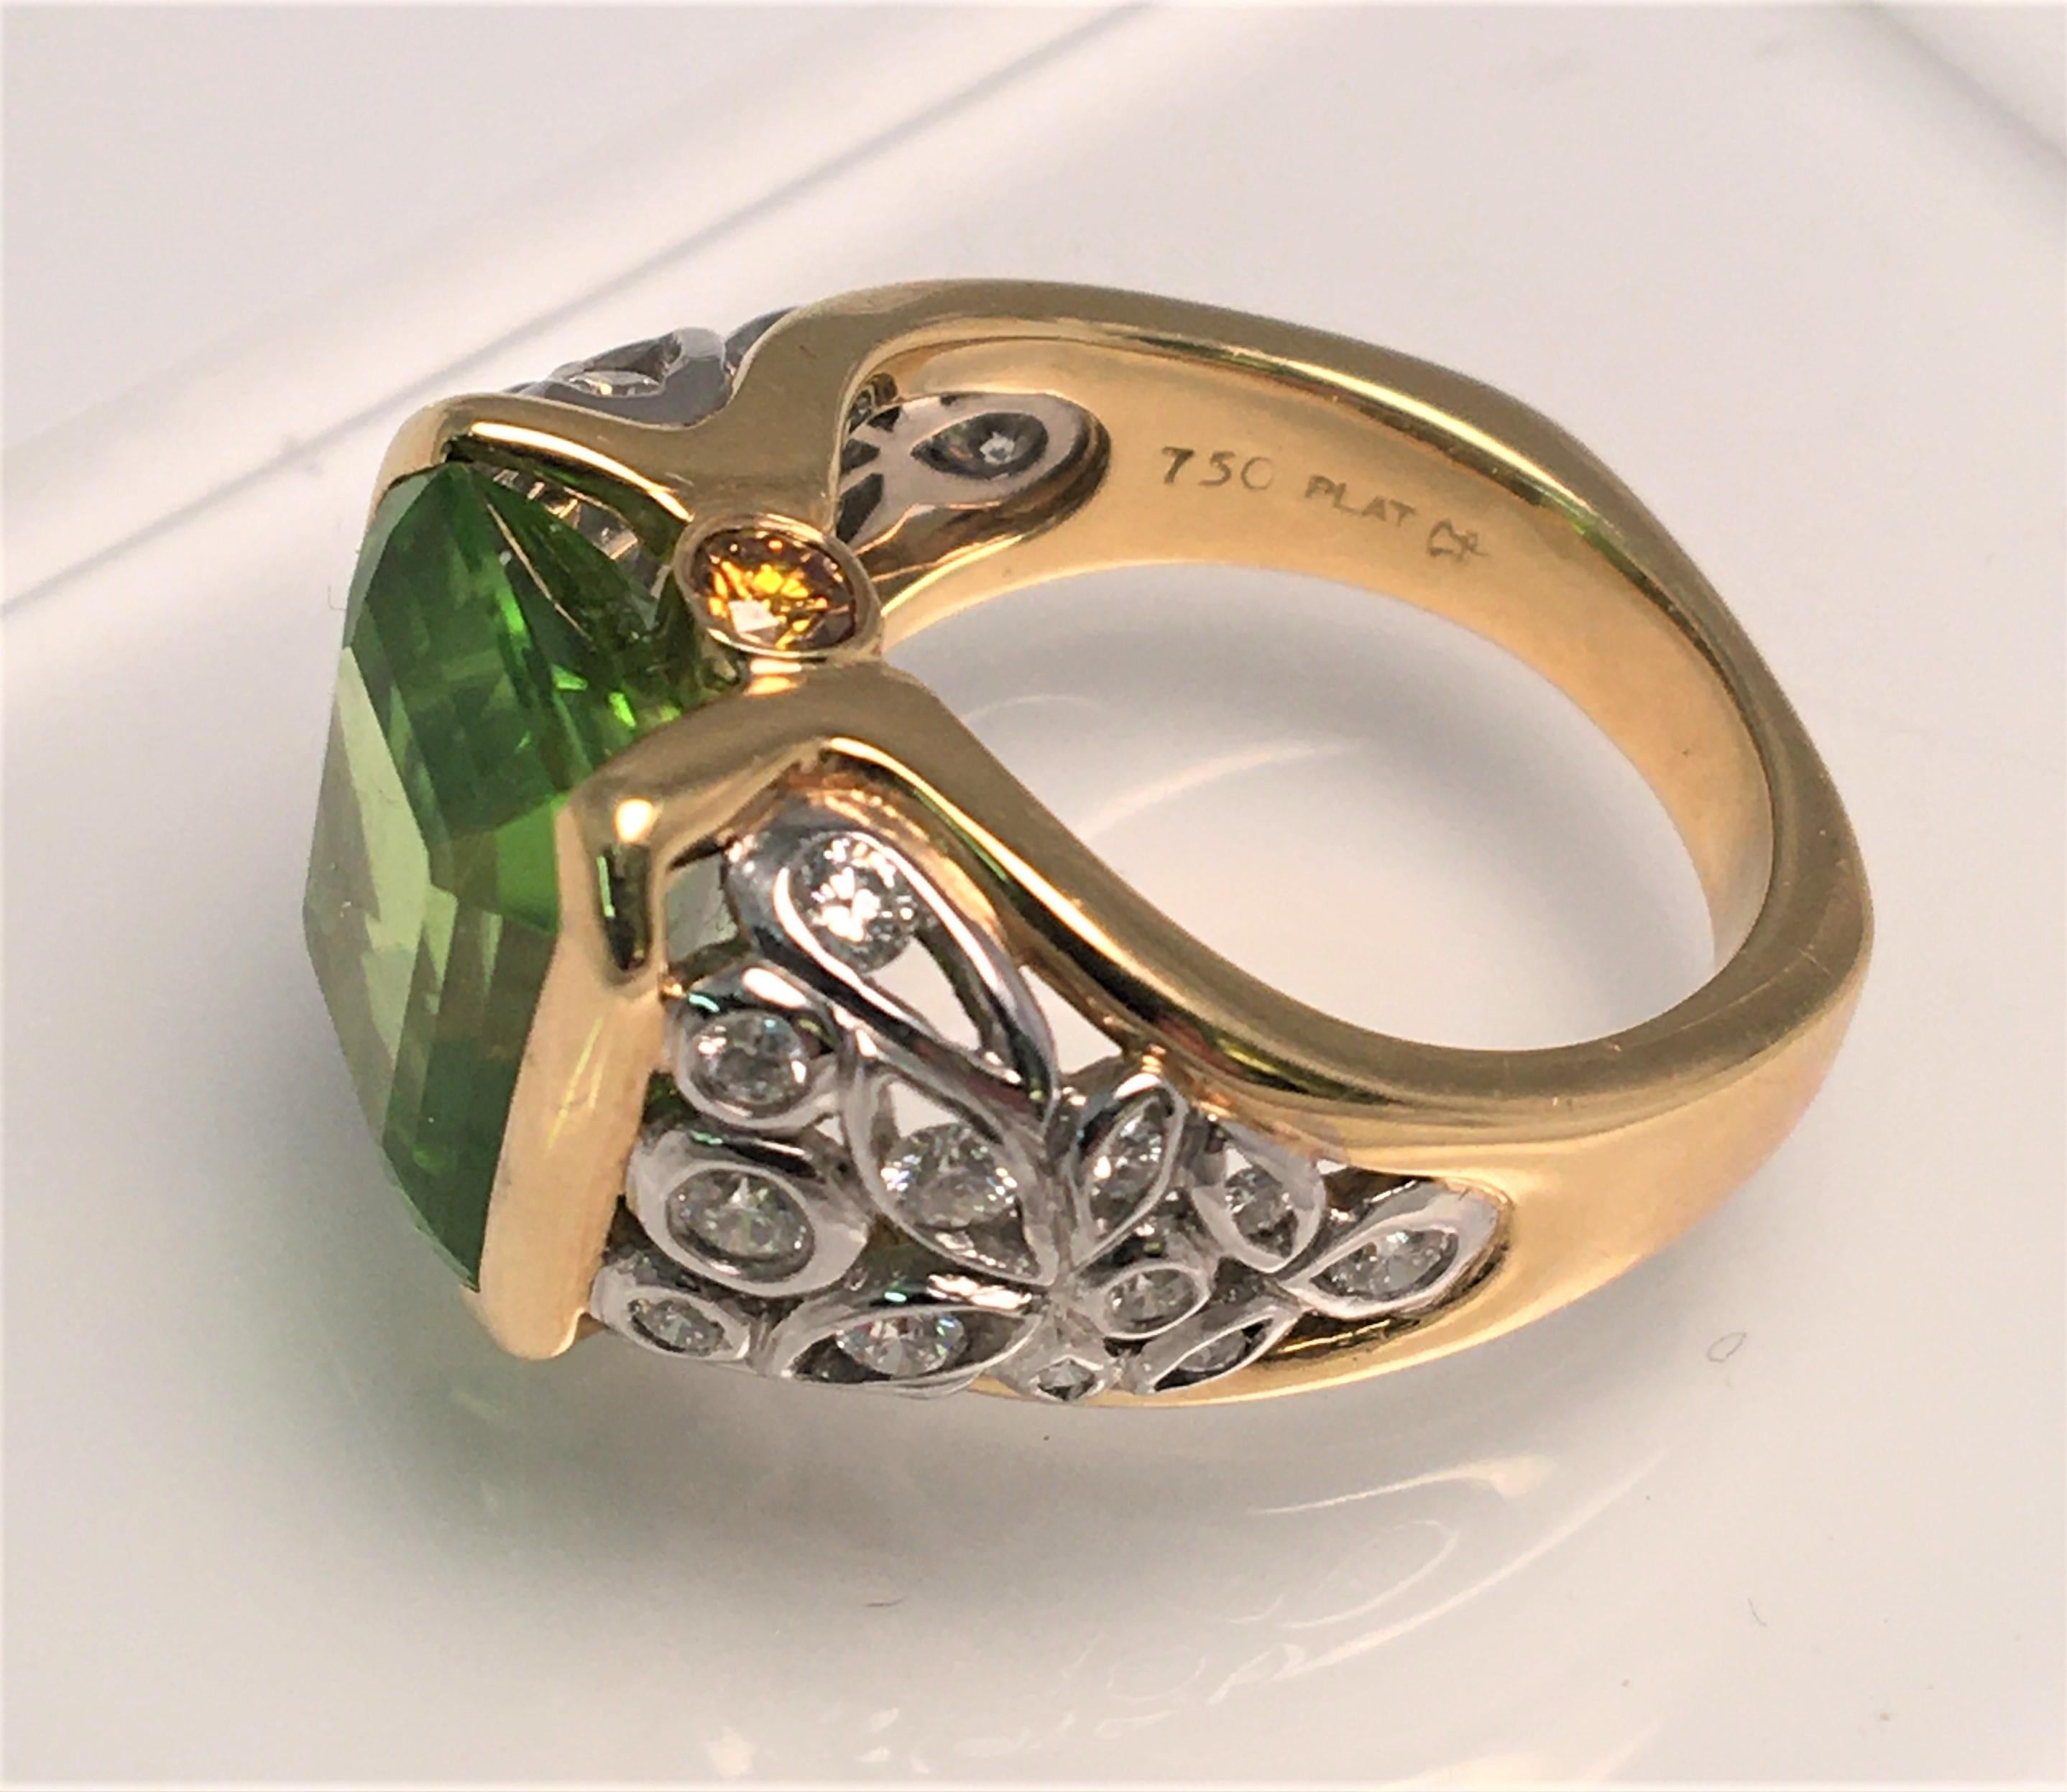 Von Designer Richard Krementz, bekannt für hohe Qualität und außergewöhnliche Steine.
Dieser Ring ist ein echter Hingucker!  Der wunderschöne, grün gefärbte Peridot wird durch eine Fassung aus Platin, 18 Karat Gelbgold und Diamanten ergänzt.
Peridot